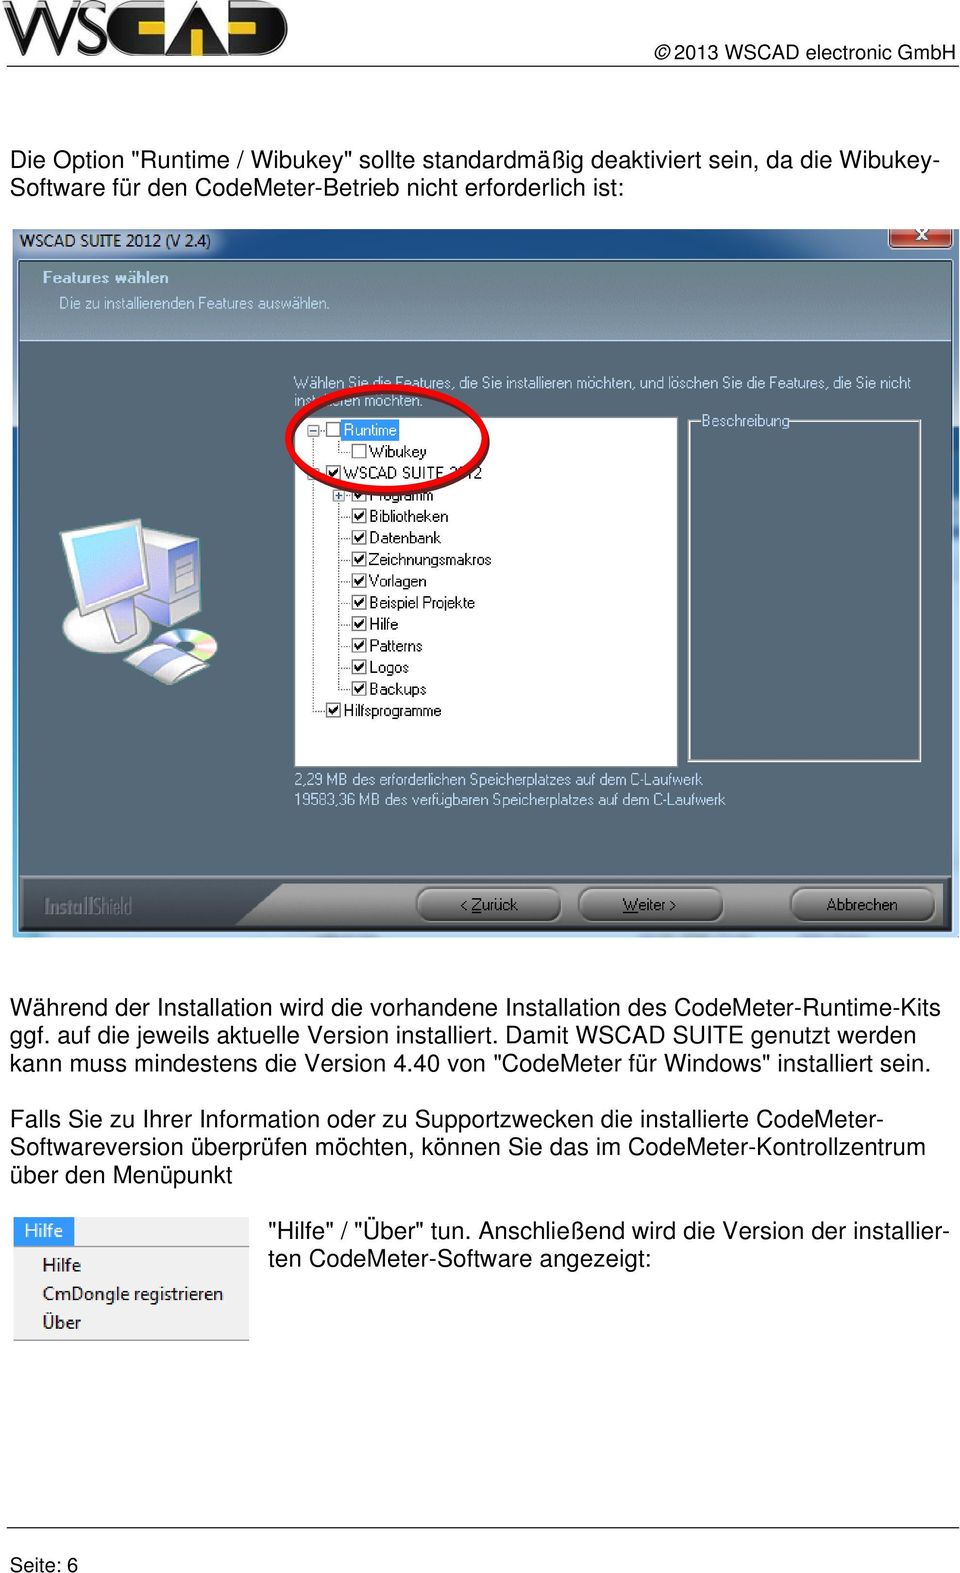 Damit WSCAD SUITE genutzt werden kann muss mindestens die Version 4.40 von "CodeMeter für Windows" installiert sein.